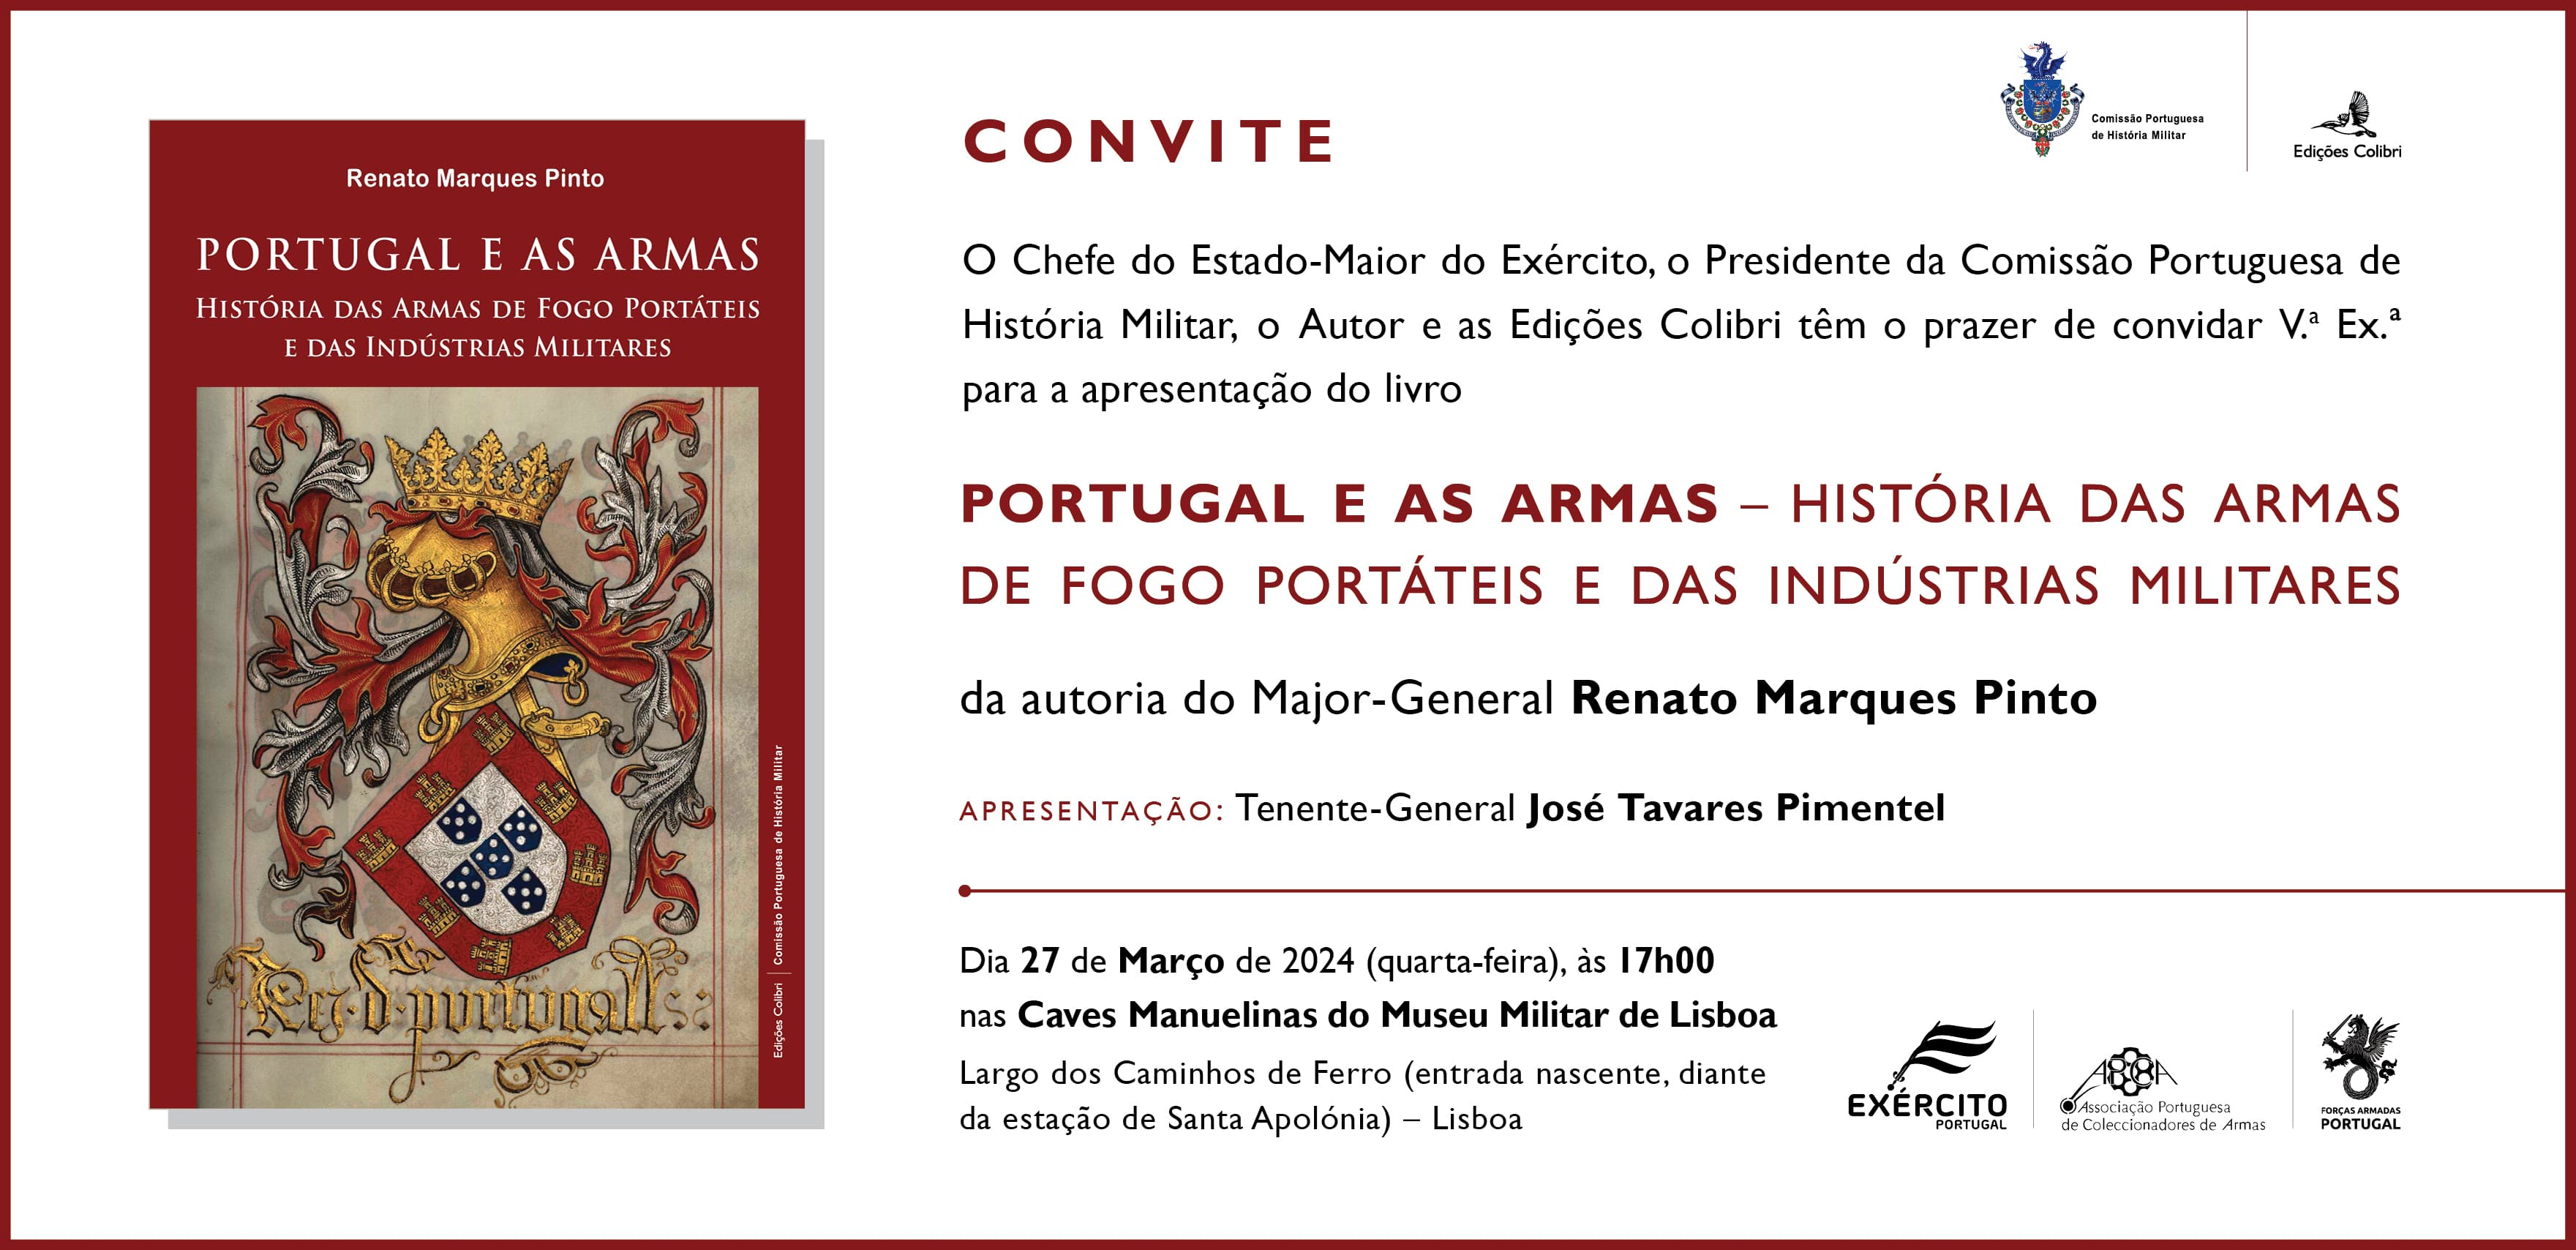 Apresentação do livro "Portugal e as Armas", do Major-General Renato Marques Pinto